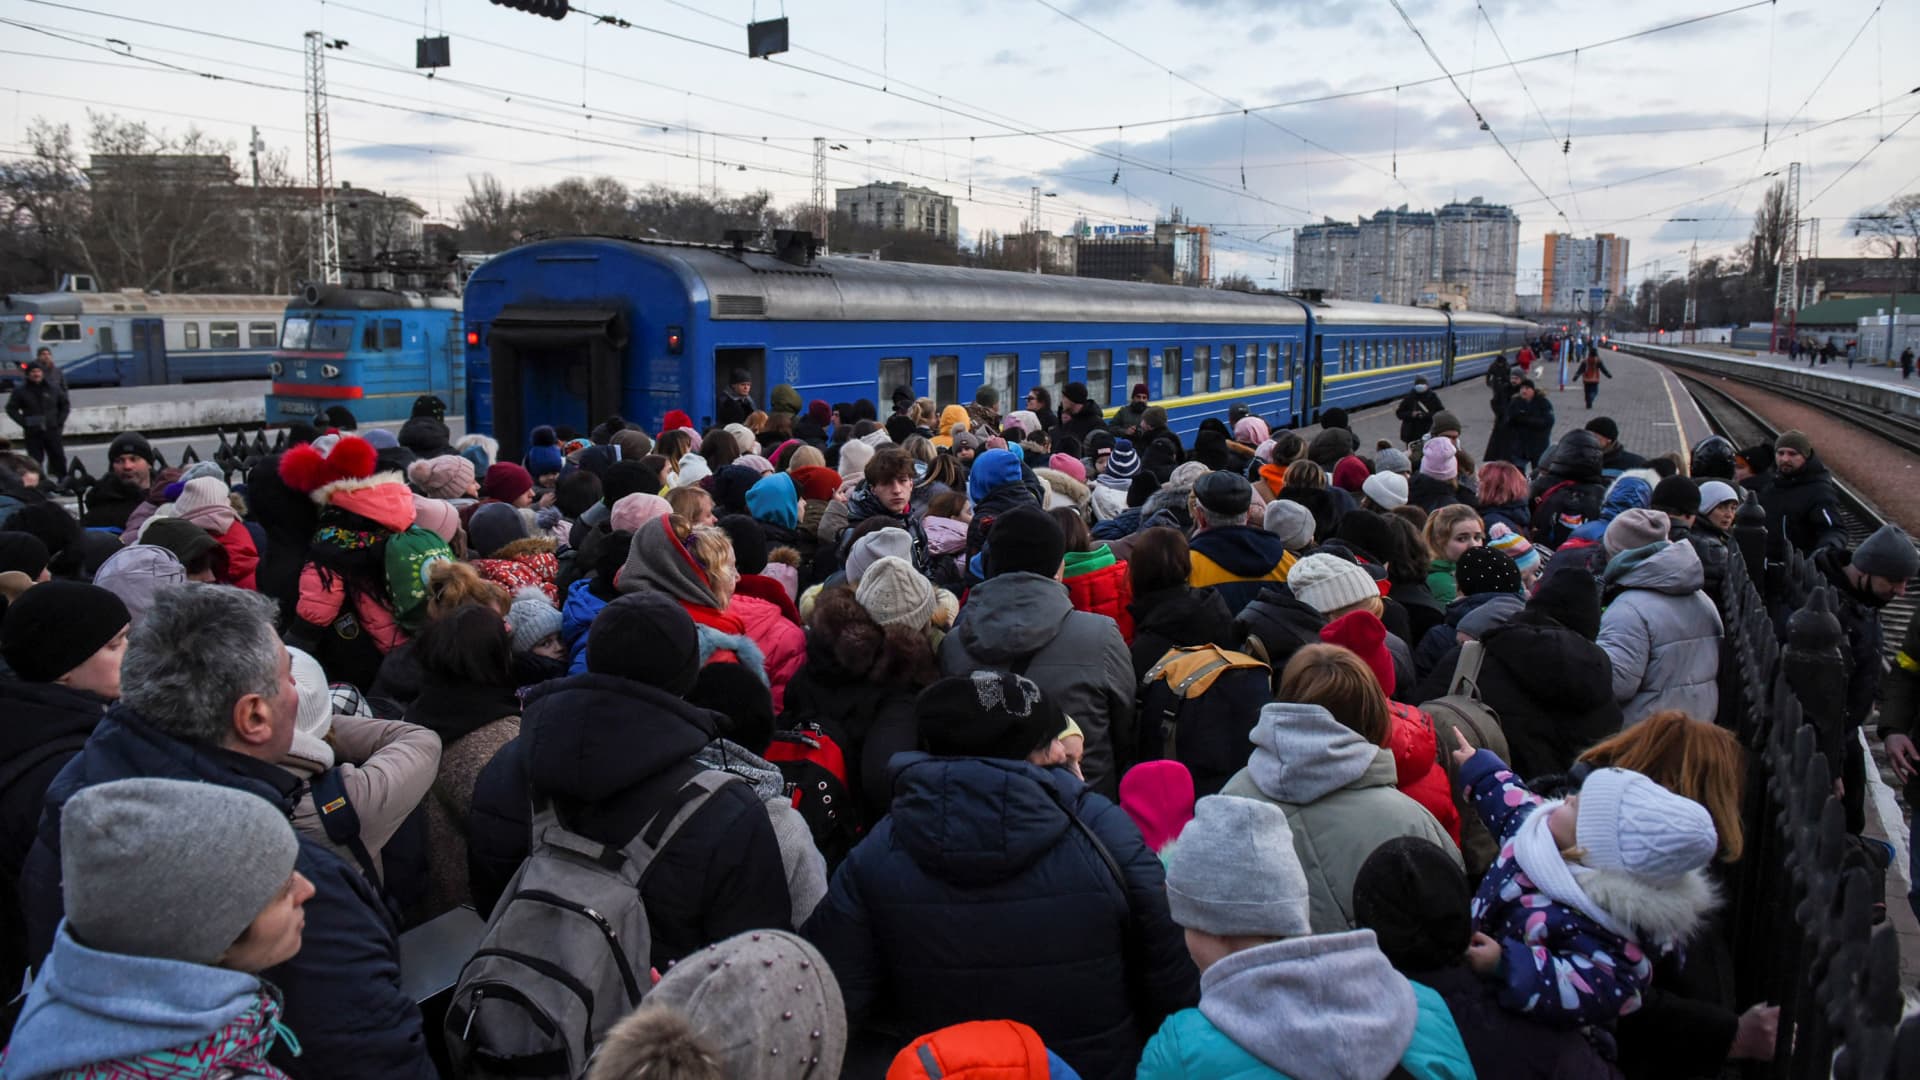 Civilians board a train as they flee Russia's invasion of Ukraine, in Odessa, Ukraine, March 9, 2022.